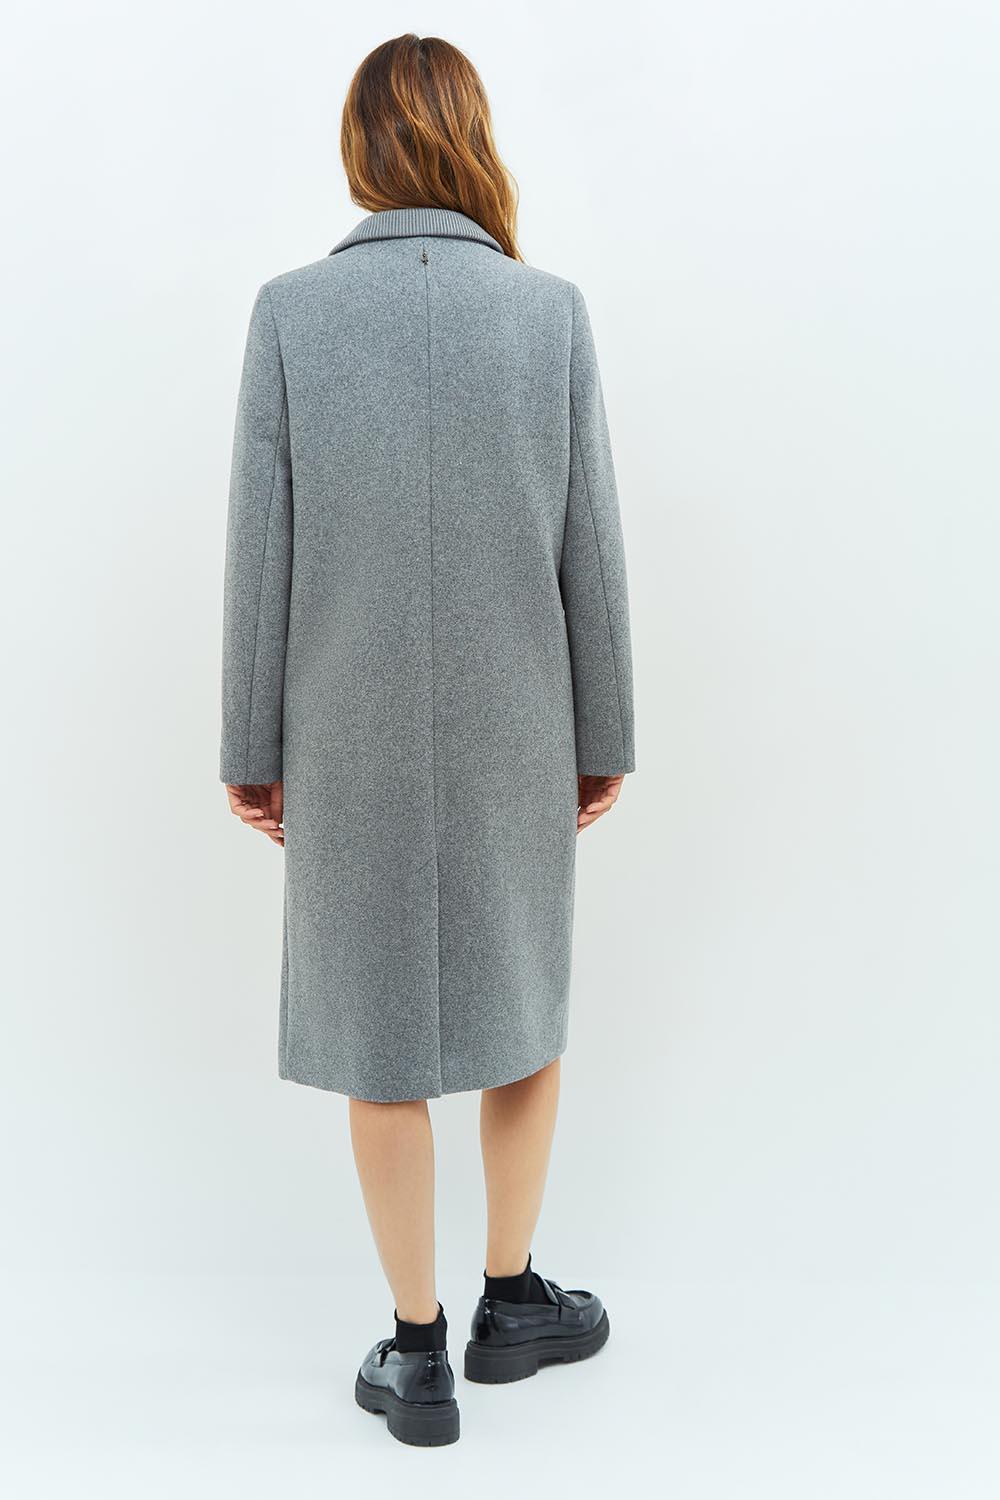 DUSTIN - Manteau gris avec bord-côte au col